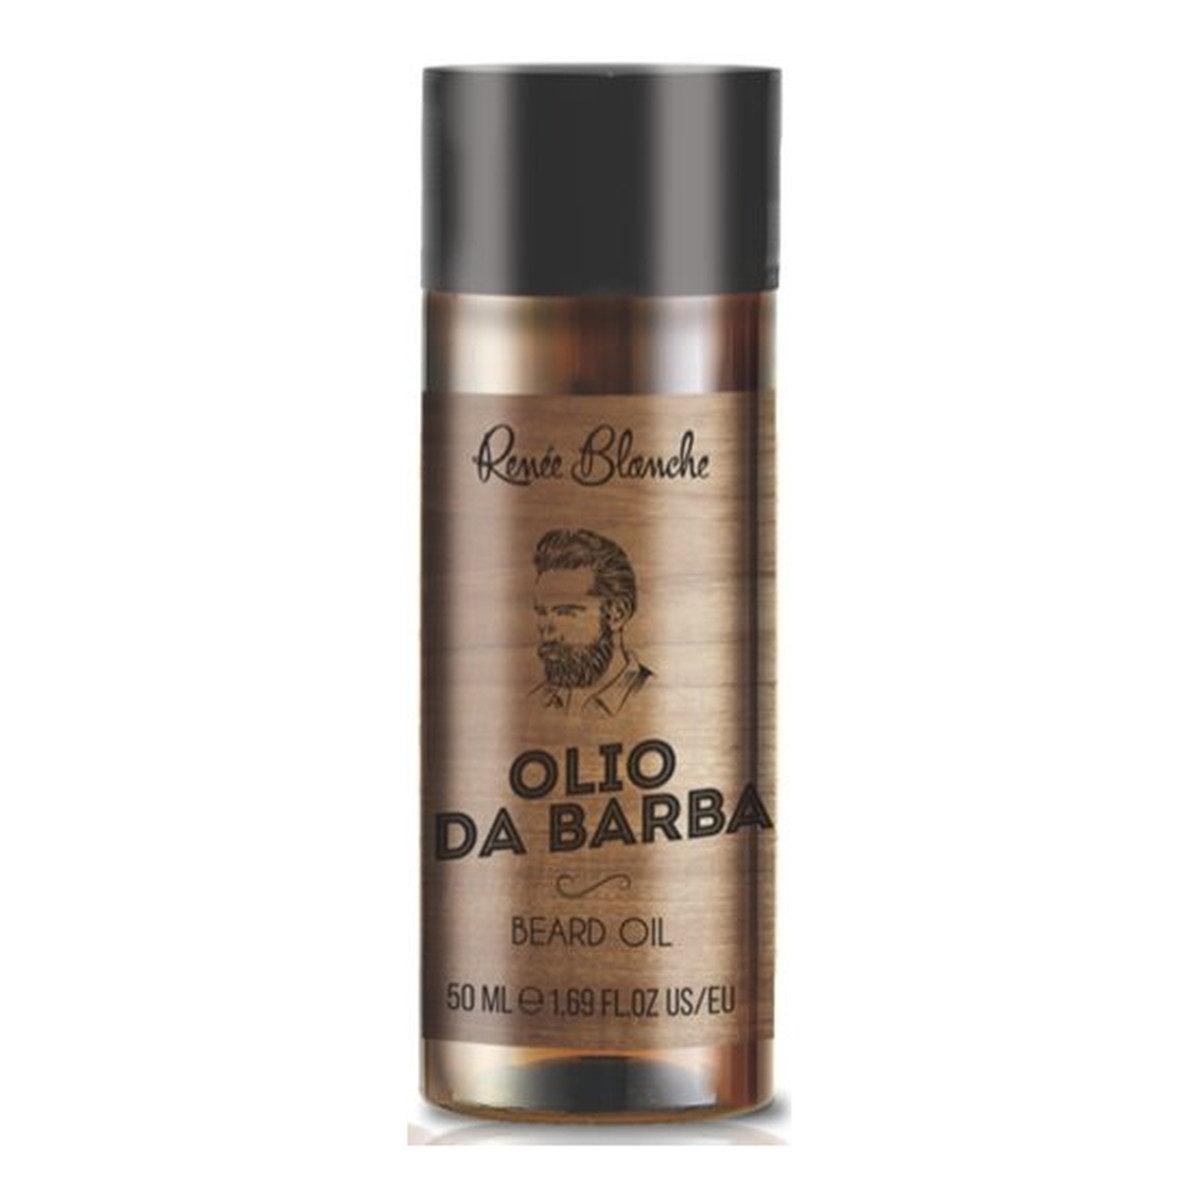 Renee Blanche Olio Da Barba Beard Oil Olejek Do Brody Gold 50ml